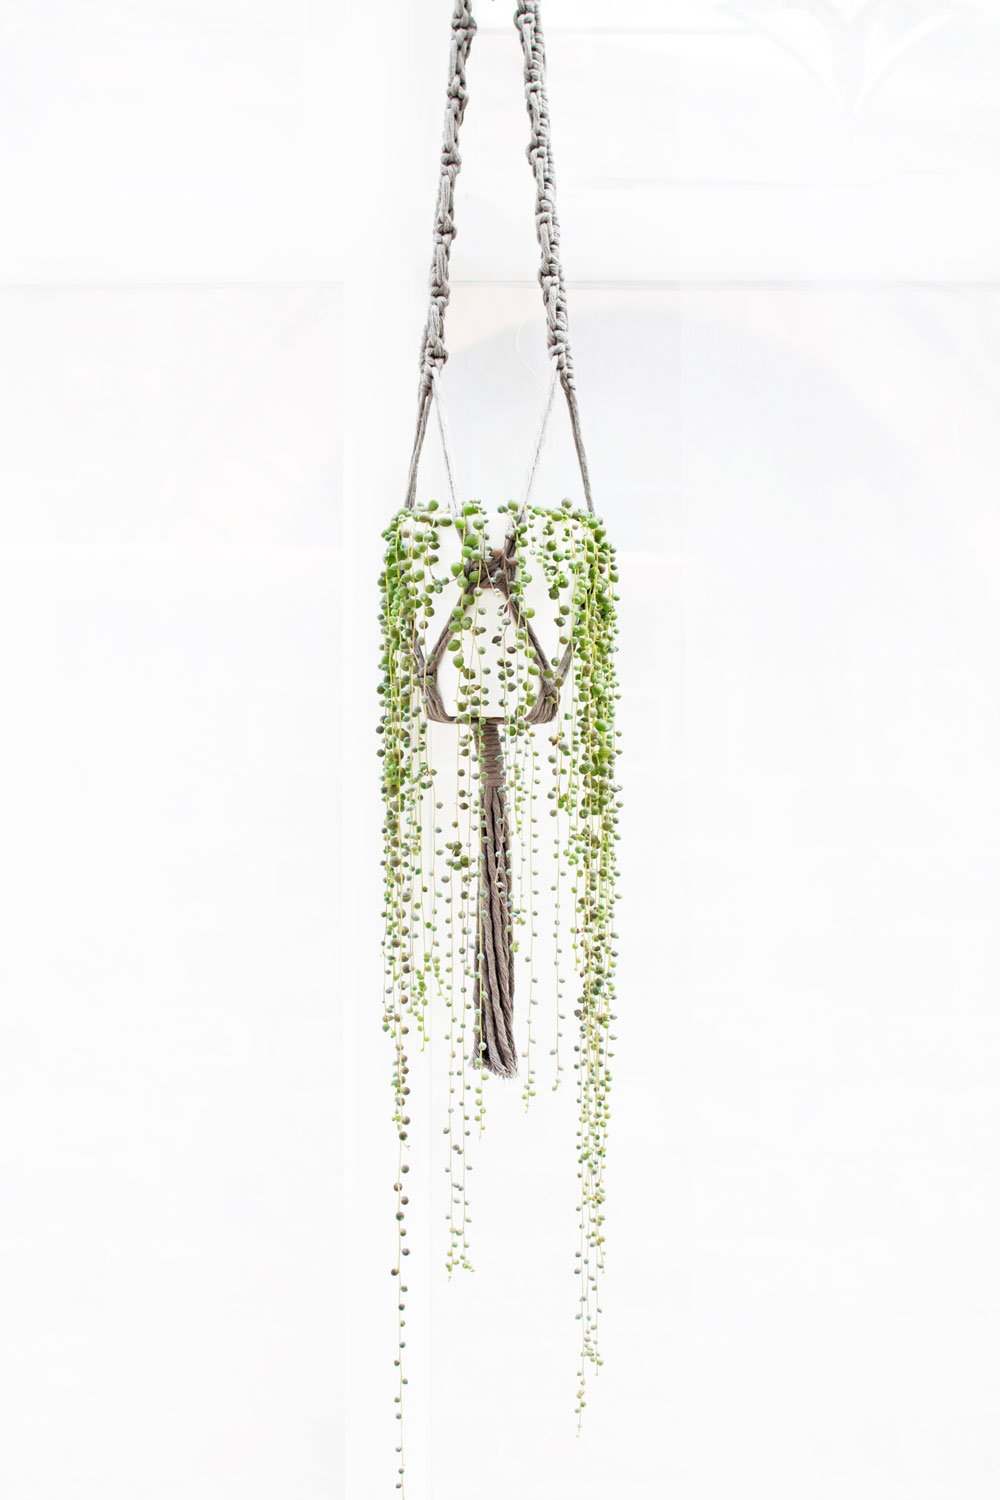 string-of-pearls-in-grey-macrame-plant-hanger.jpg